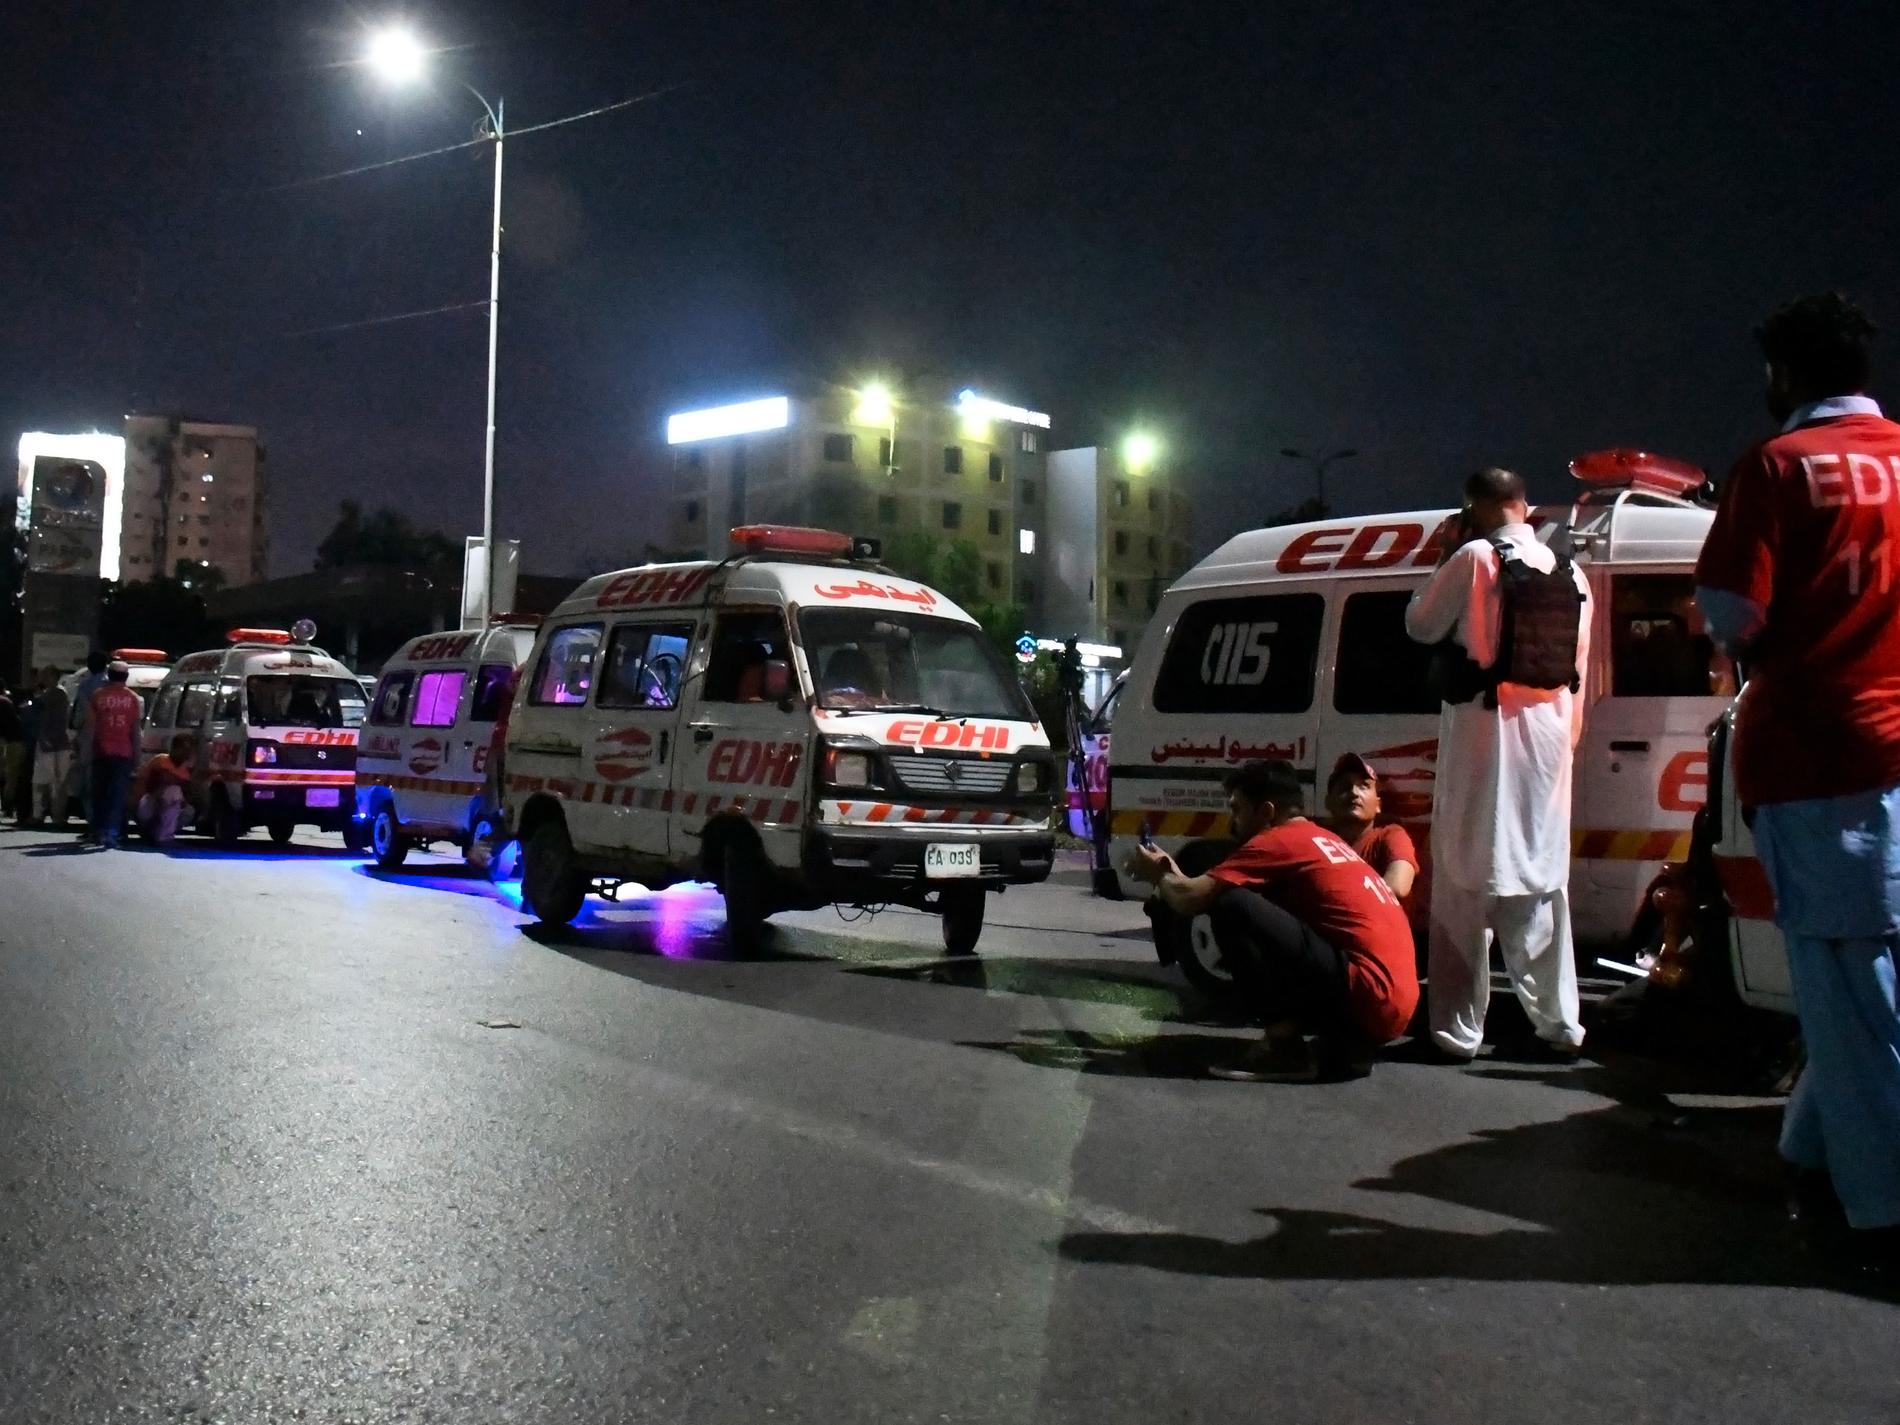 Flera döda i attack mot polishögkvarter